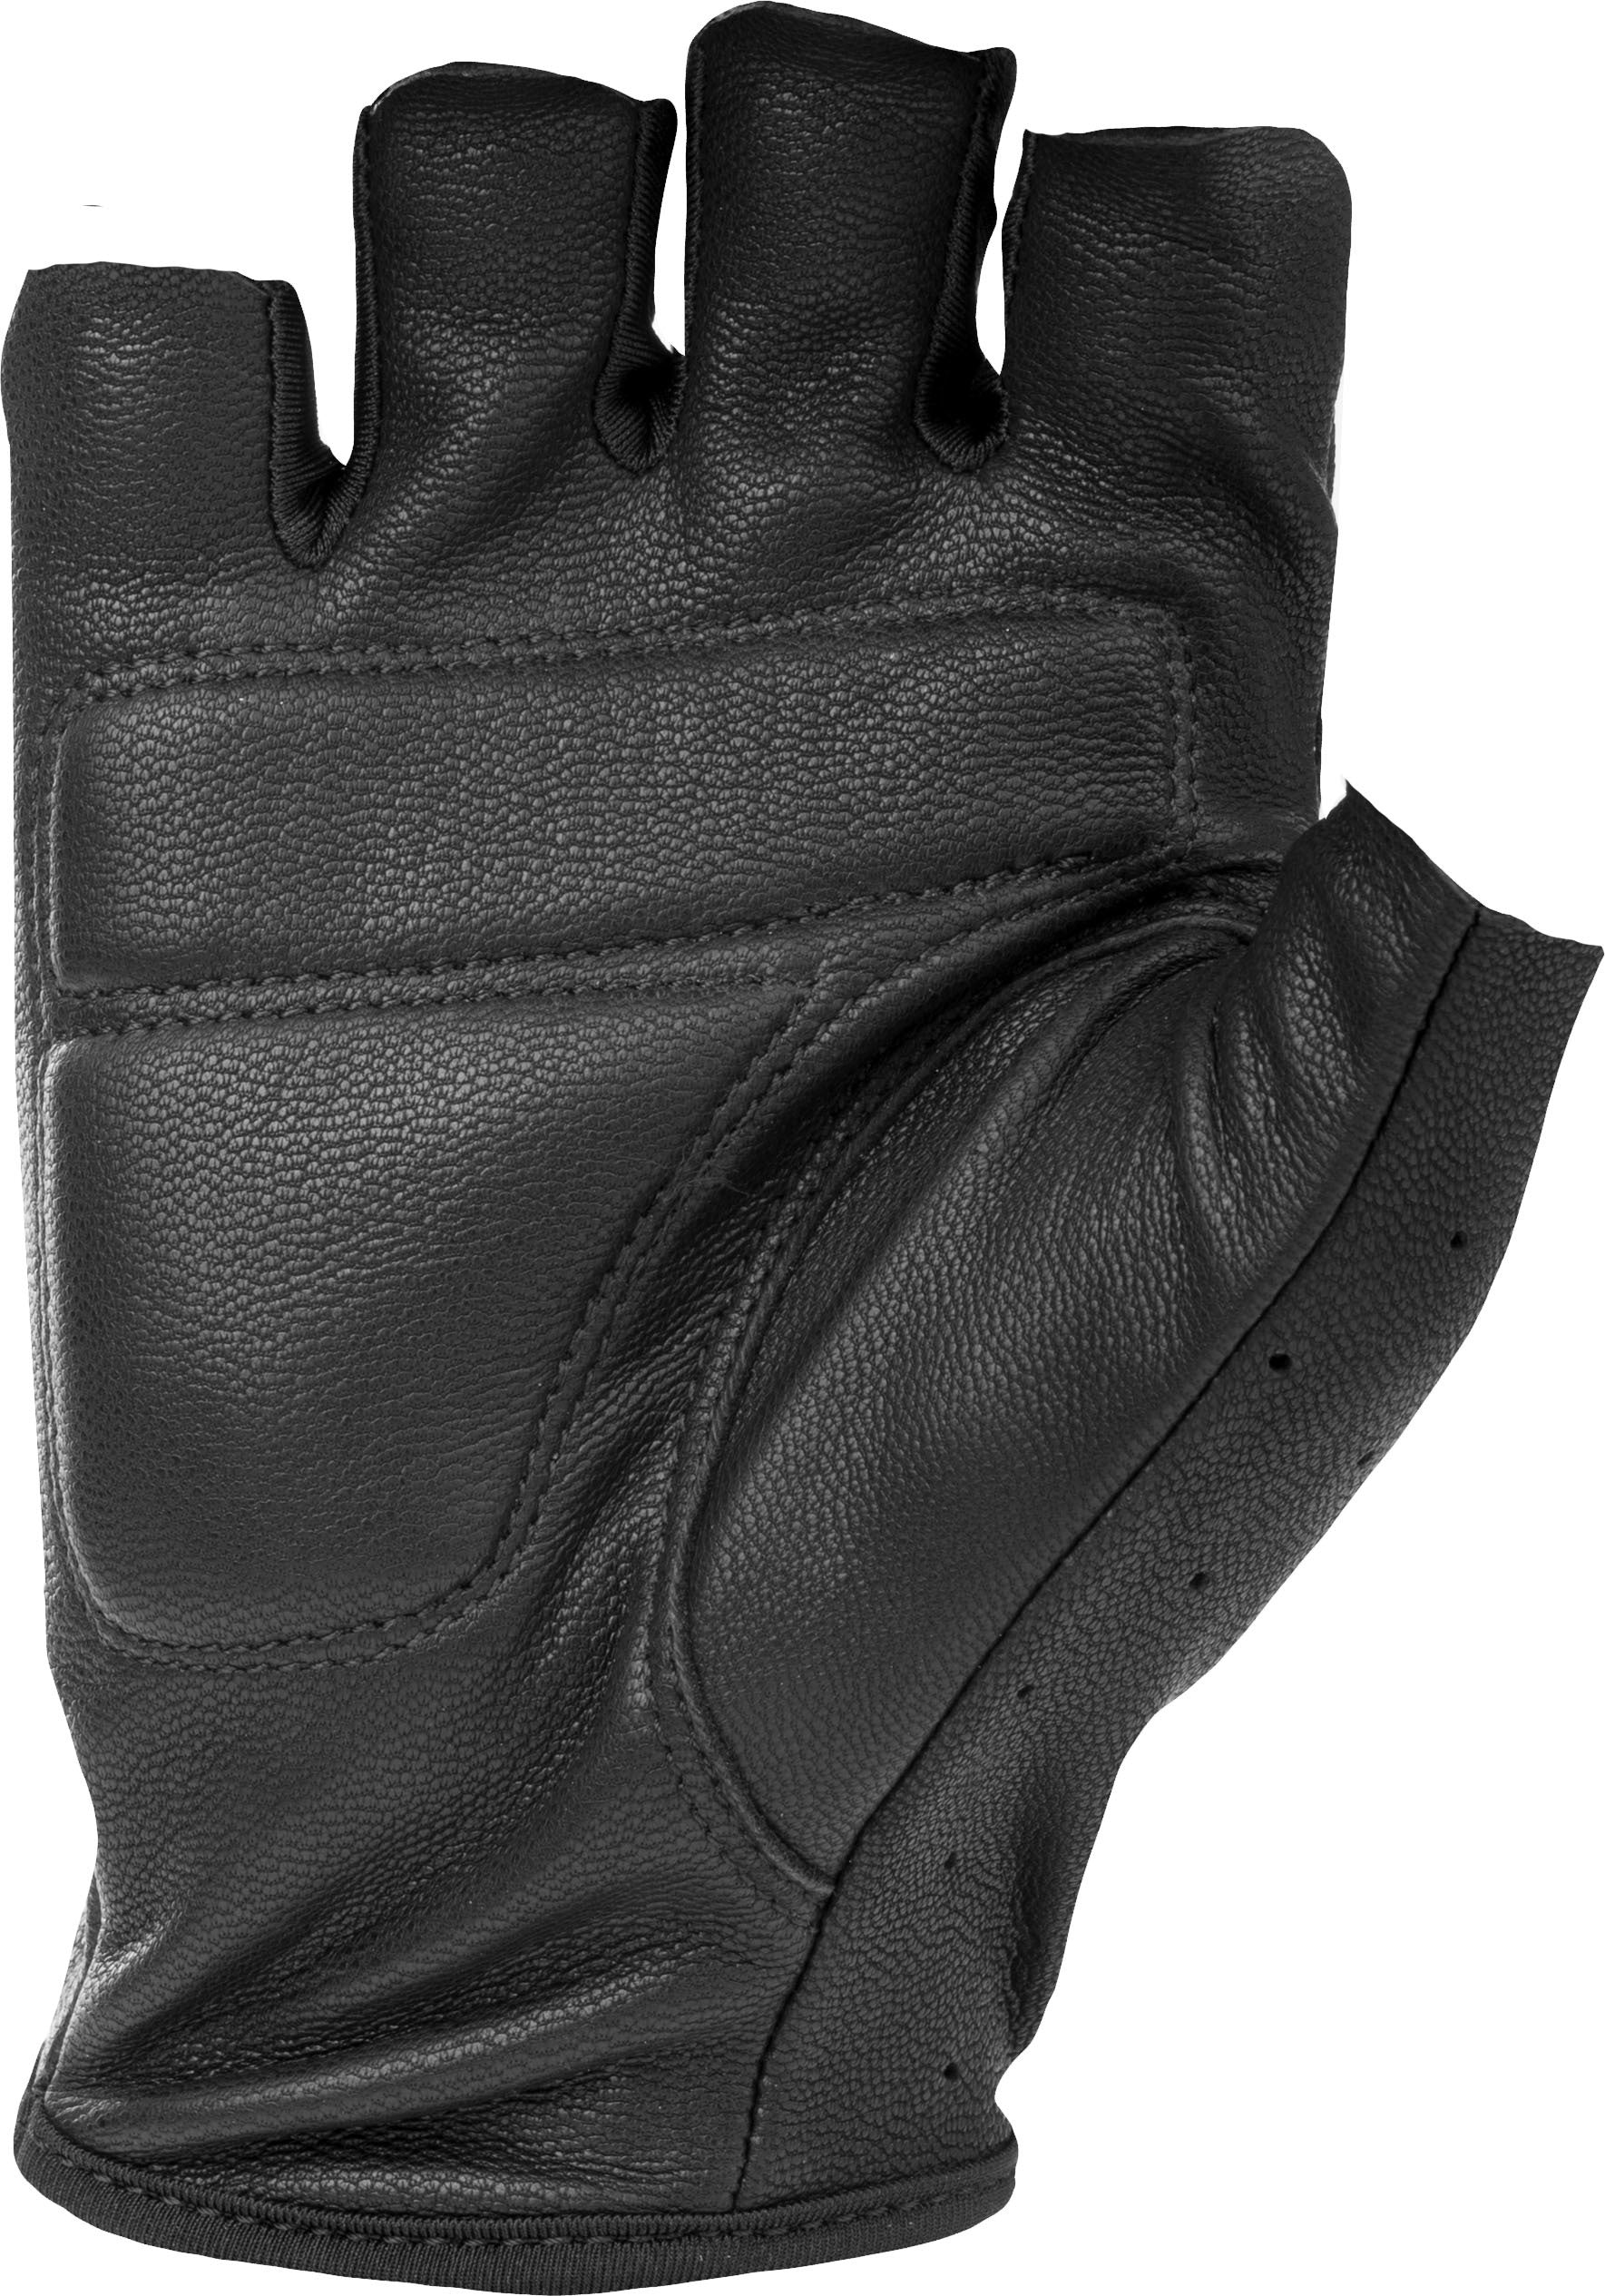 Ranger Gloves Black Md